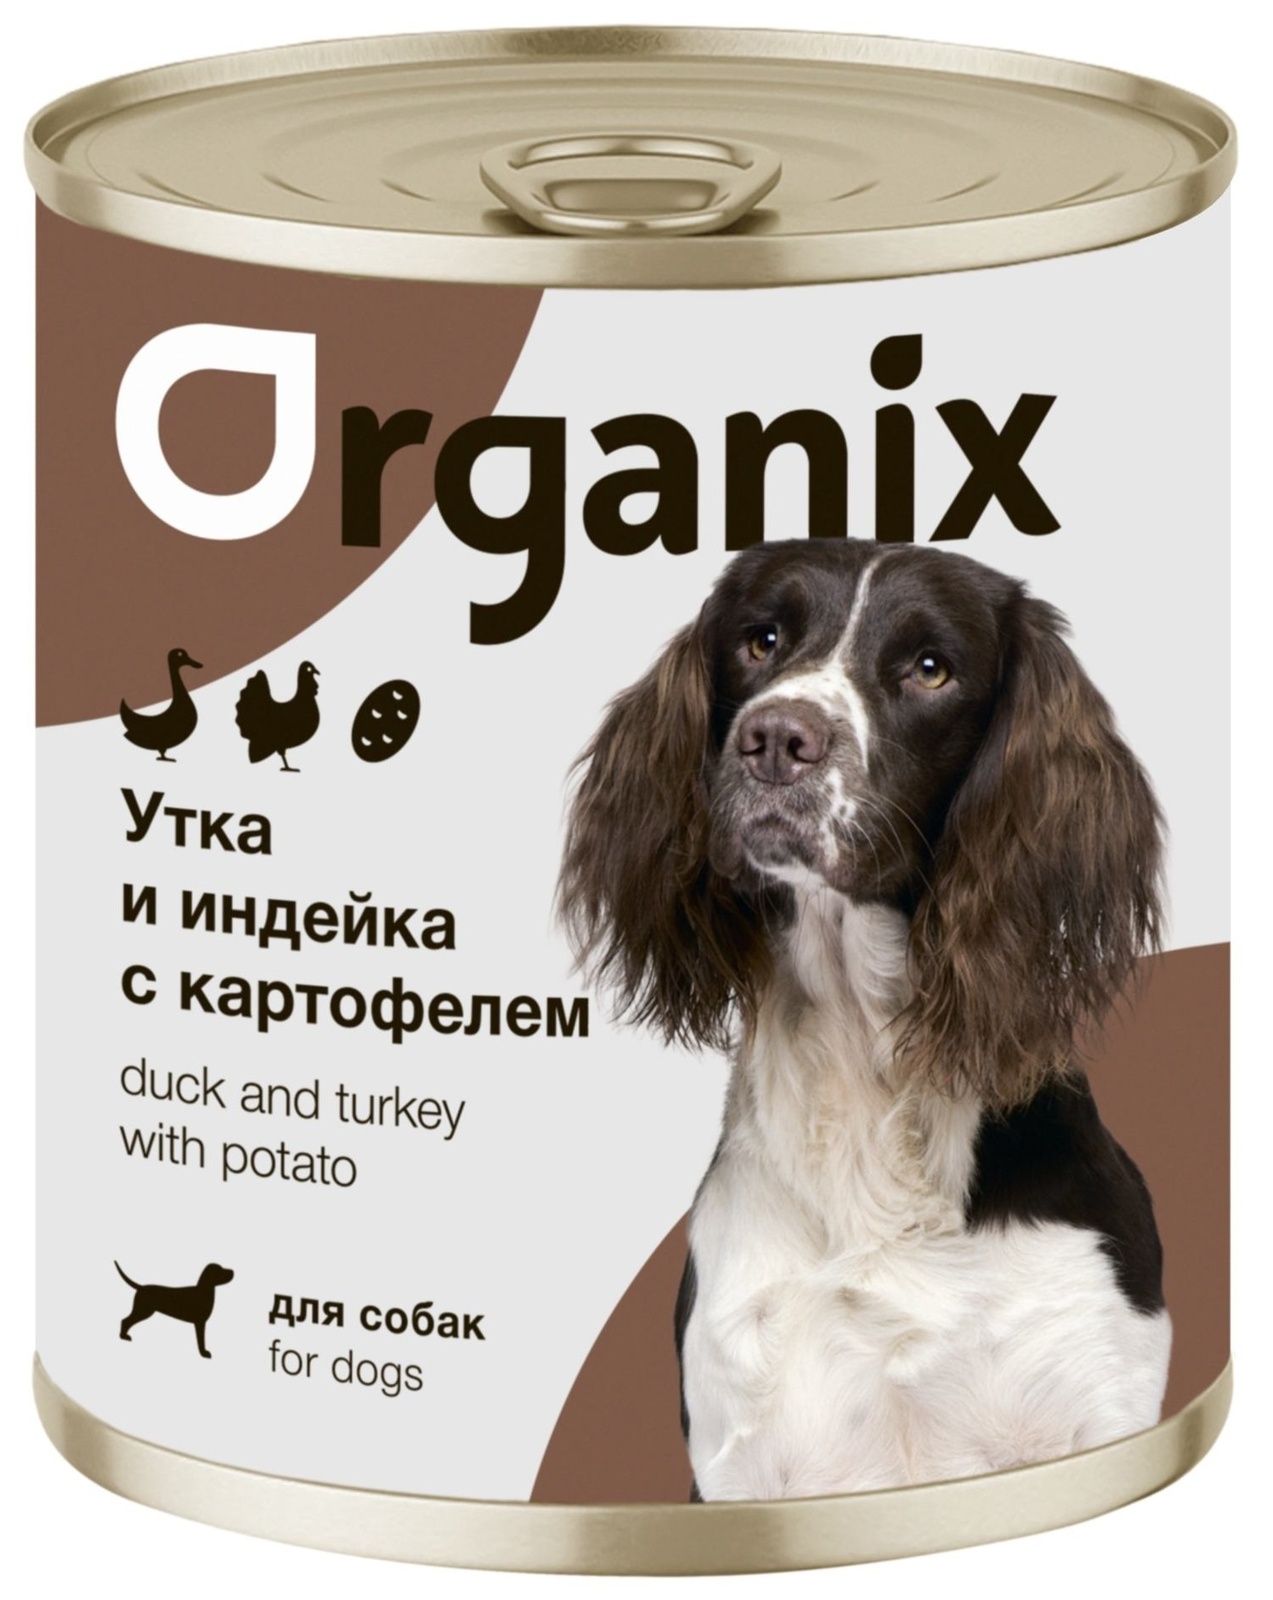 Organix консервы Organix консервы для собак Утка, индейка, картофель (100 г) organix консервы organix консервы для собак индейка с сердечками и шпинатом 100 г